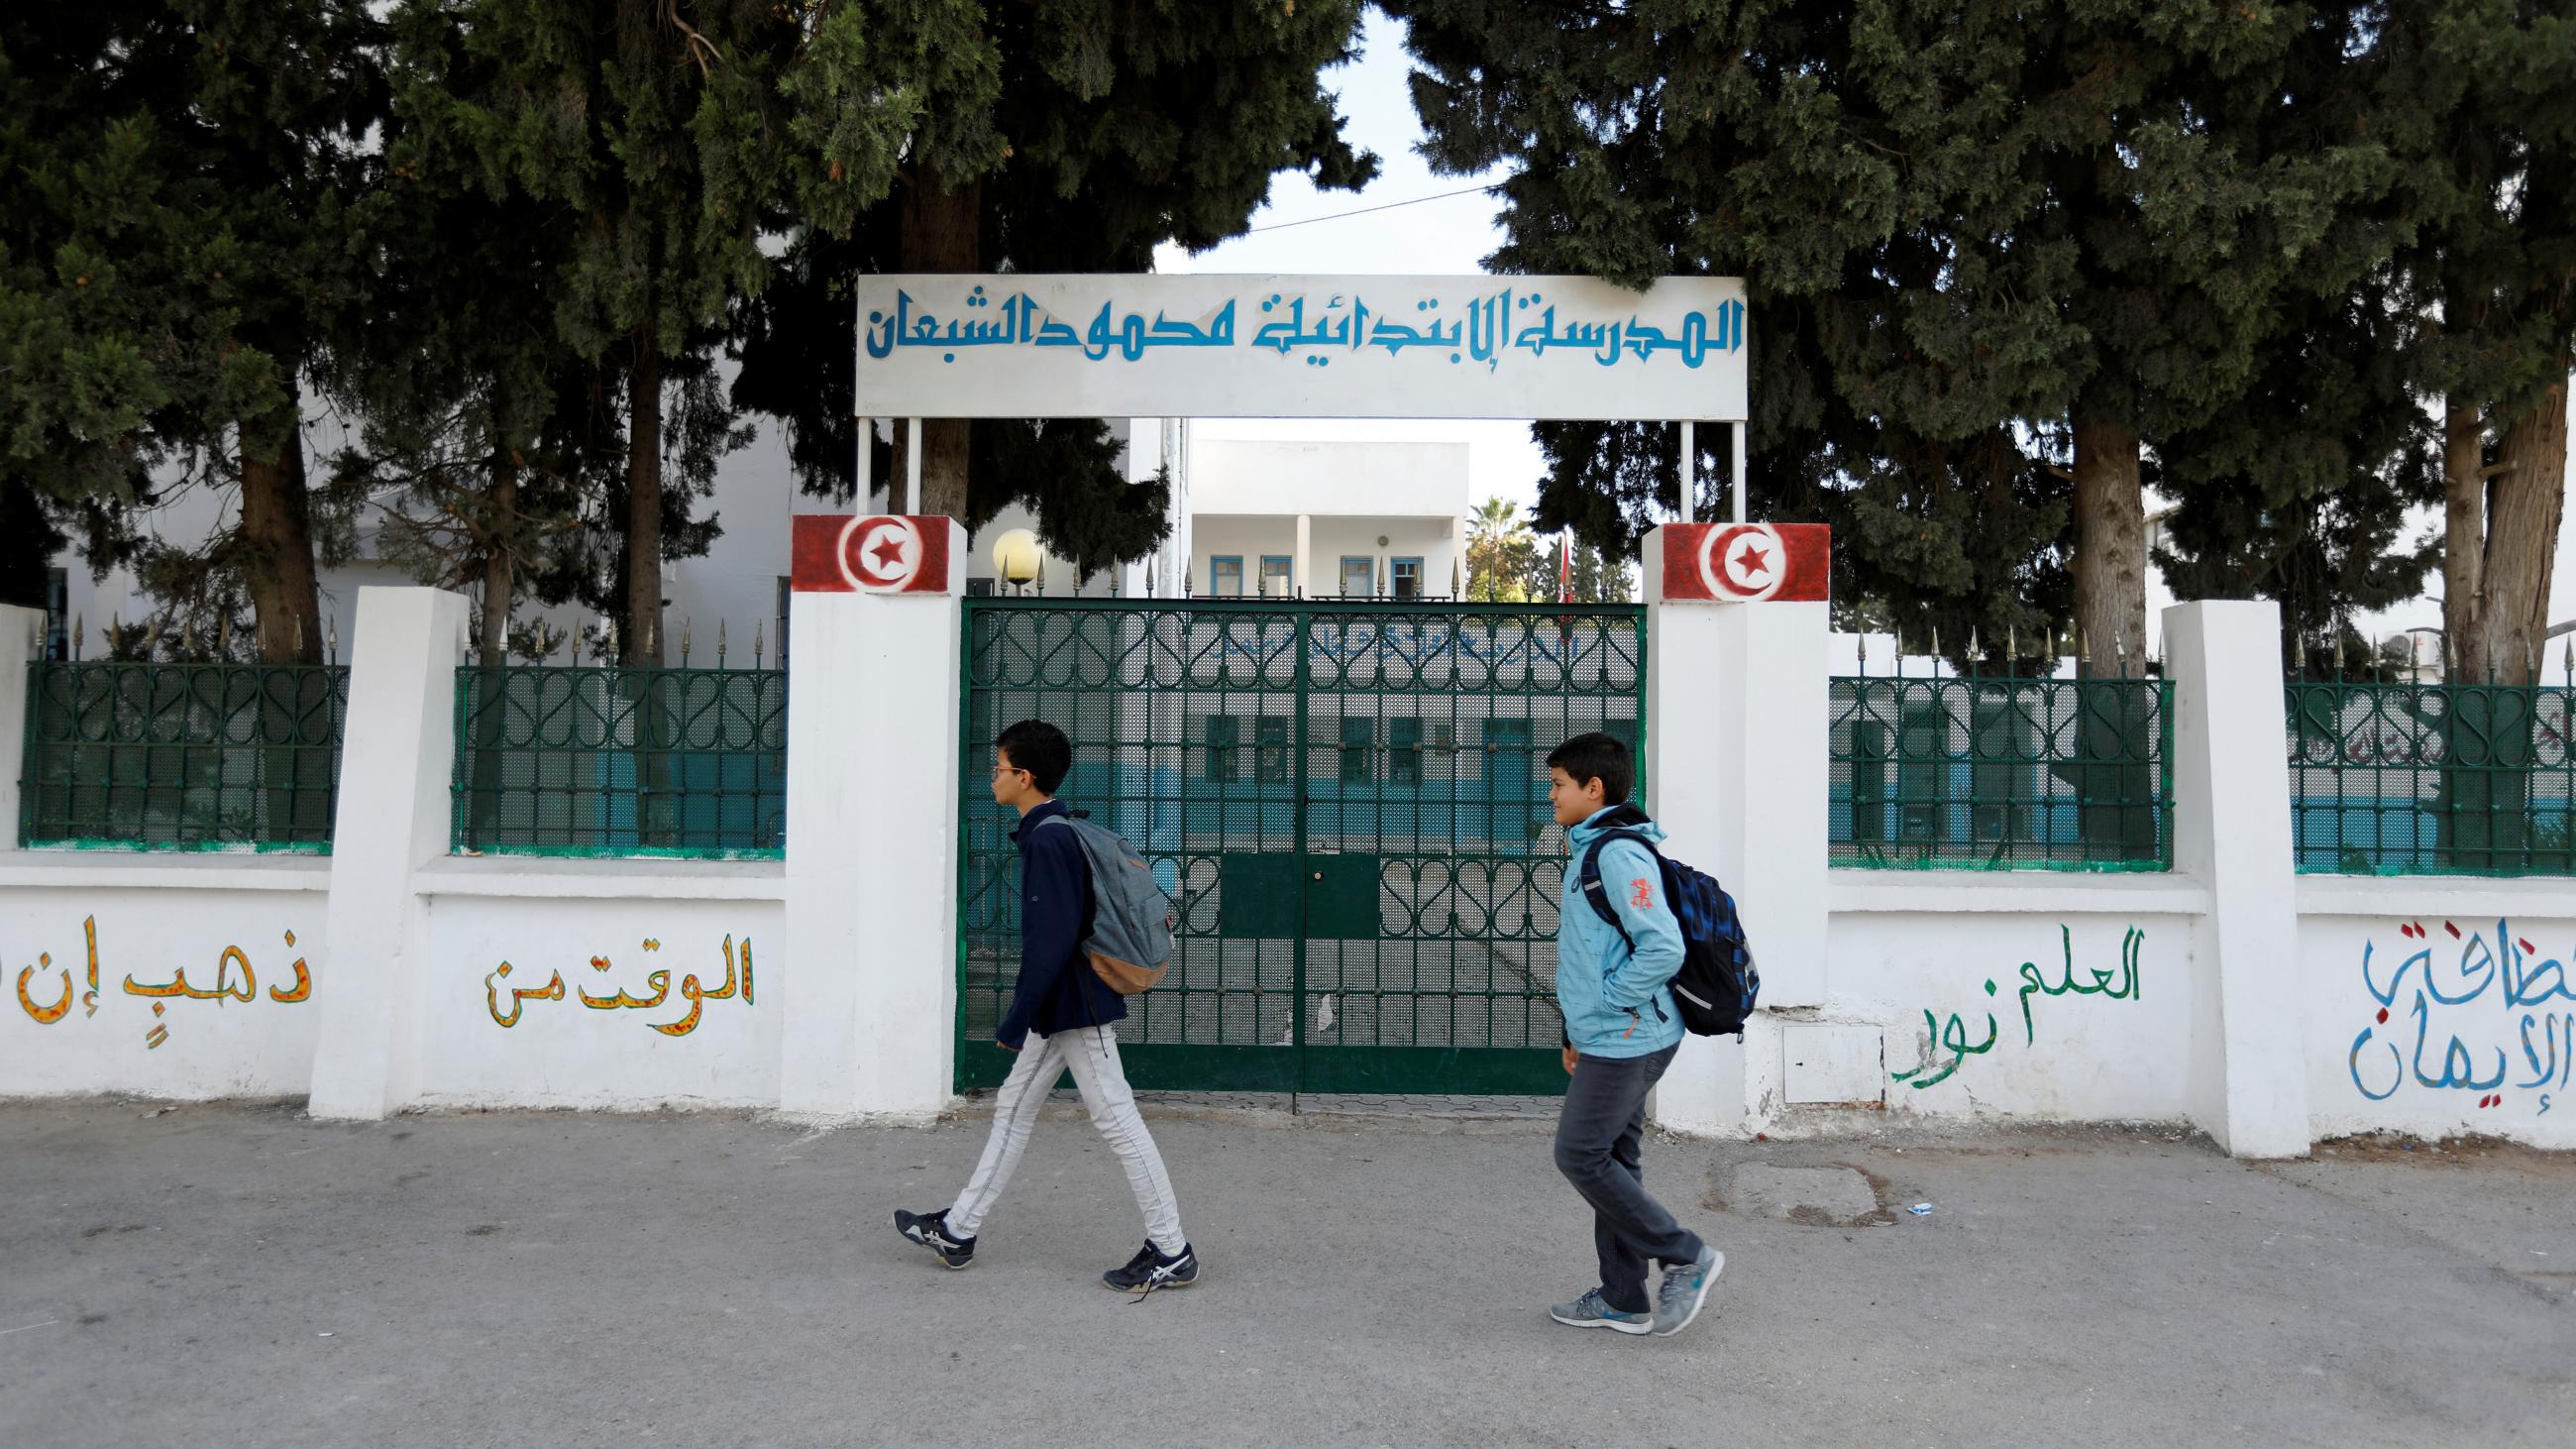 Children walk past the closed gates of a school in Tunisia